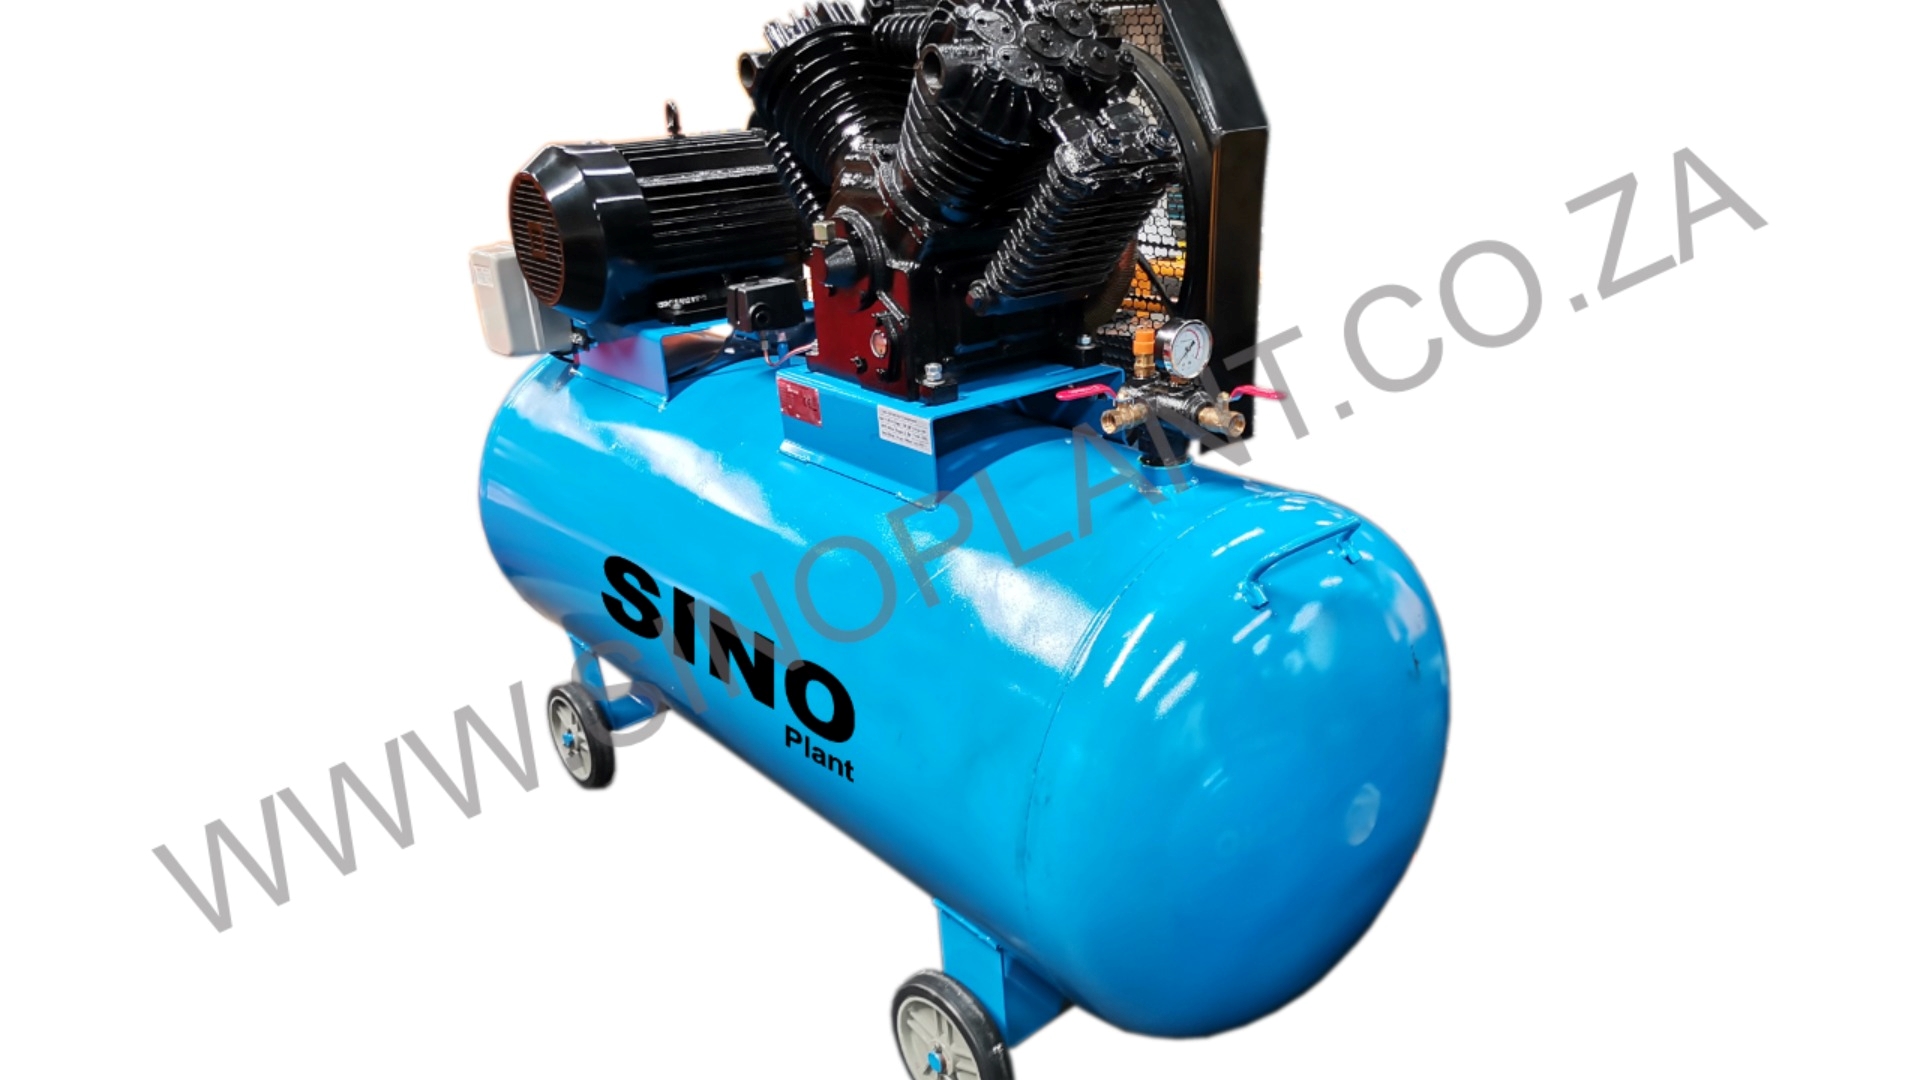 2023 Sino Plant Compressor 380V 500 Liter Tank Compressors for sale in  Gauteng | R 30,595 on Agrimag